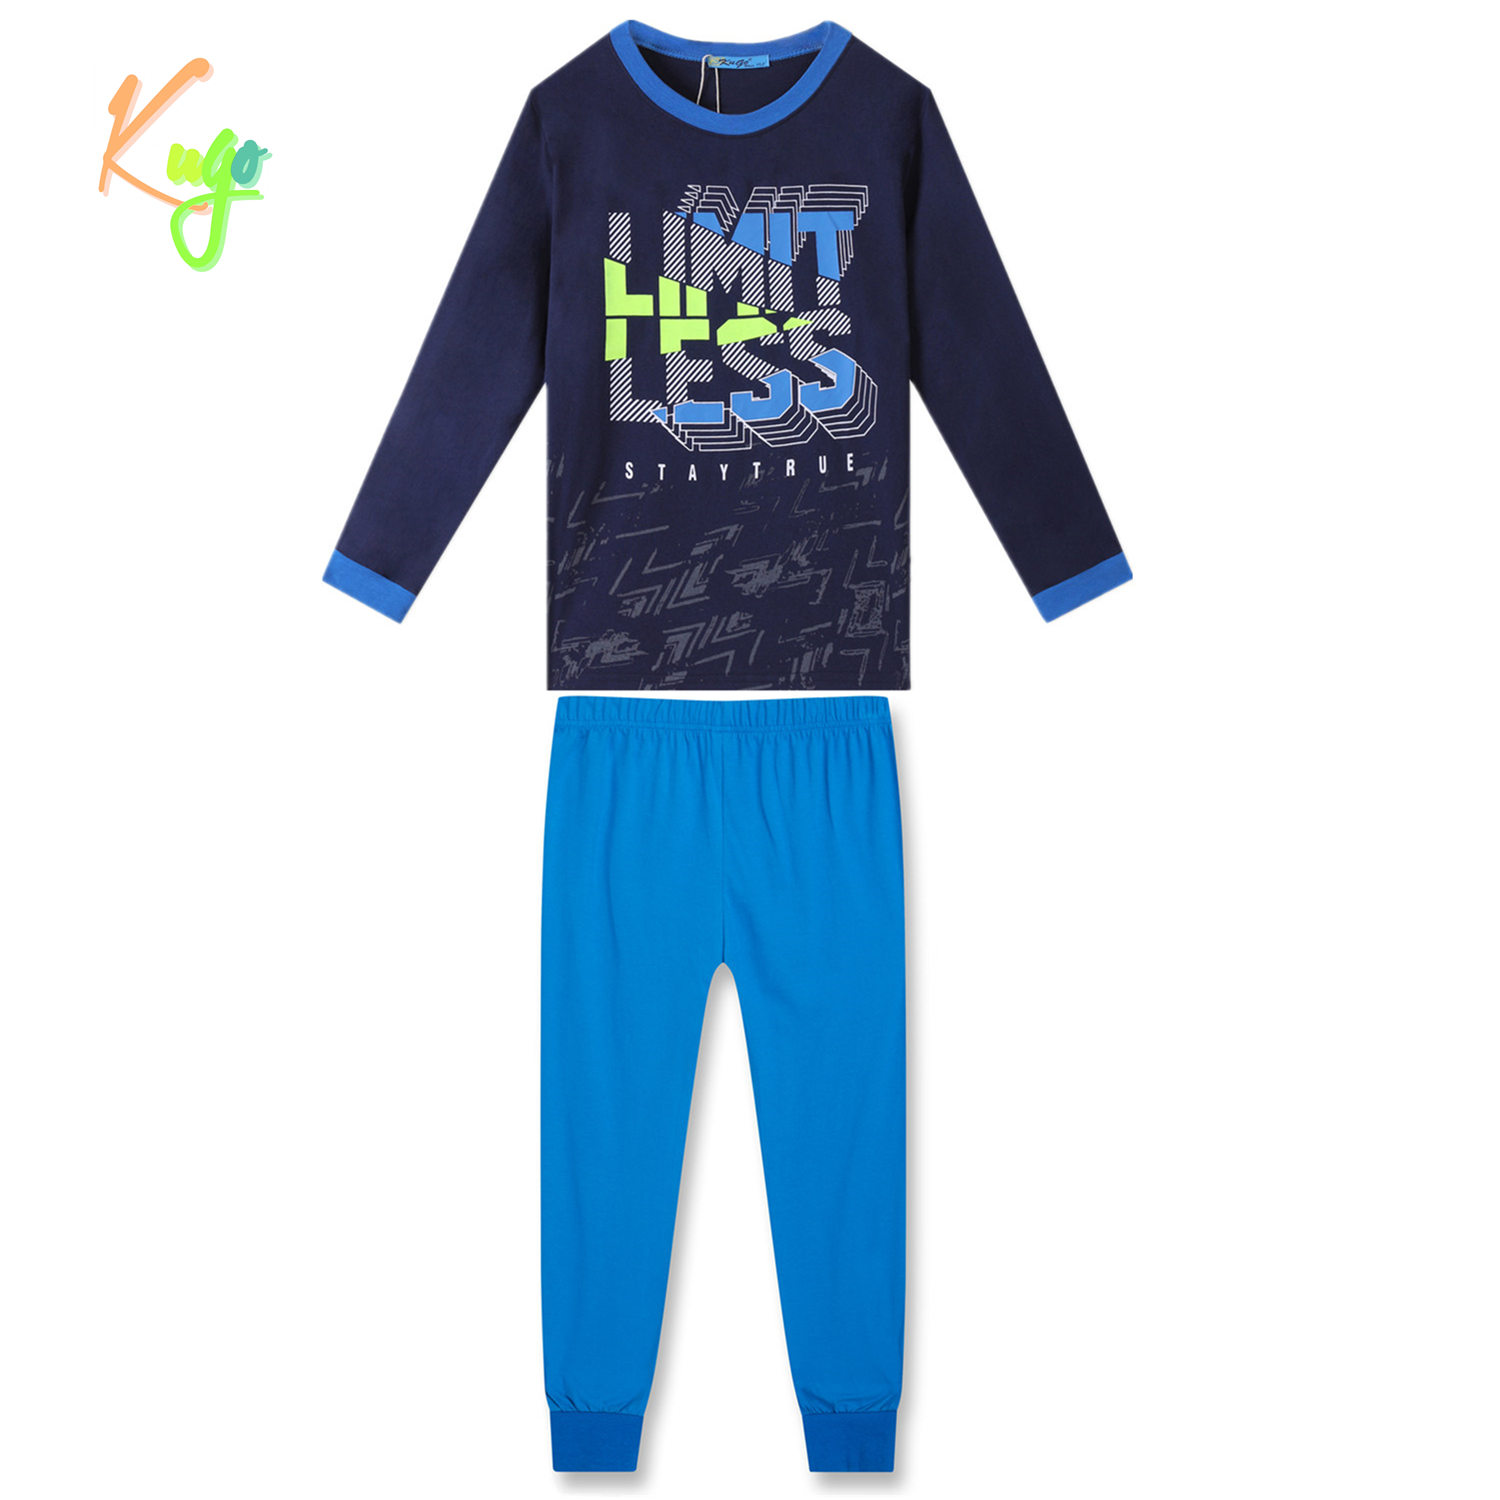 Chlapecké pyžamo - KUGO MP3783, tmavě modrá Barva: Modrá tmavě, Velikost: 140